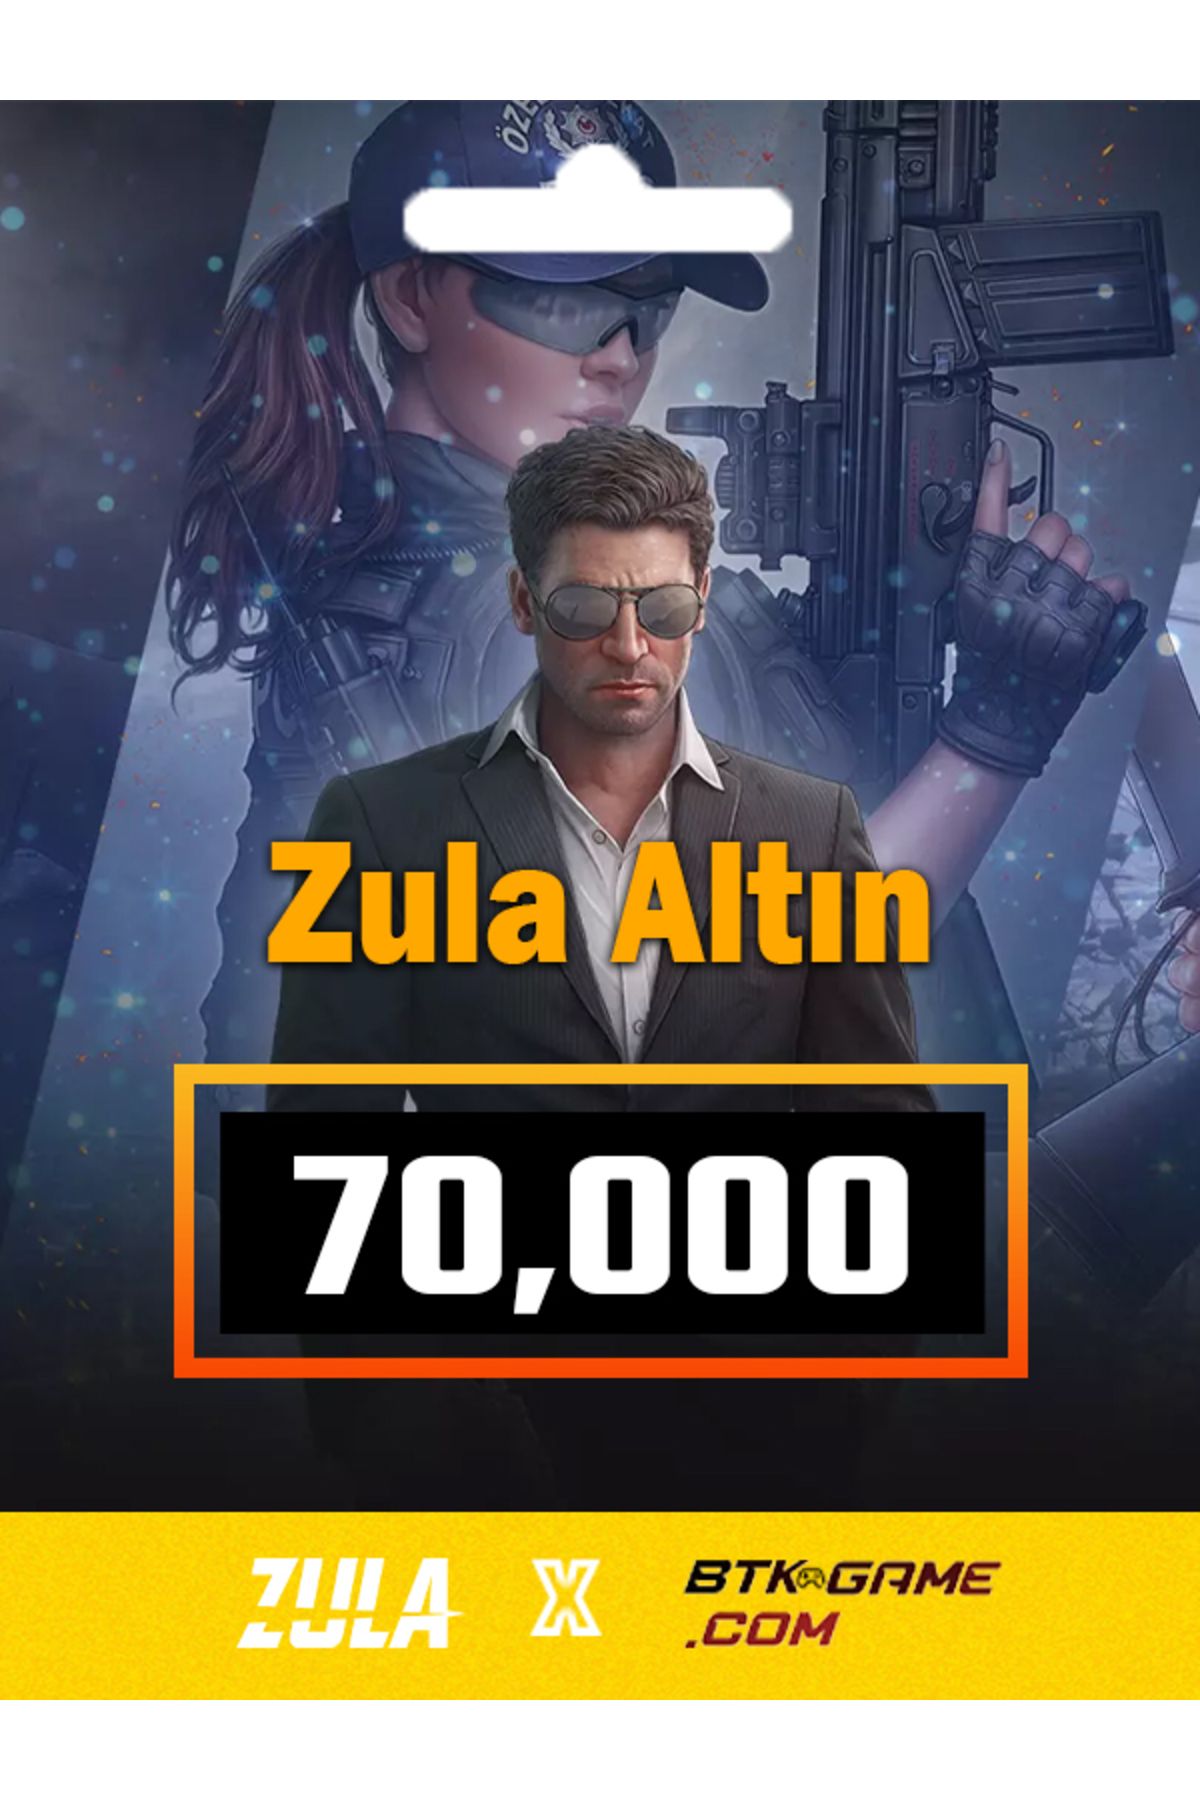 Zula 70,000 Altını